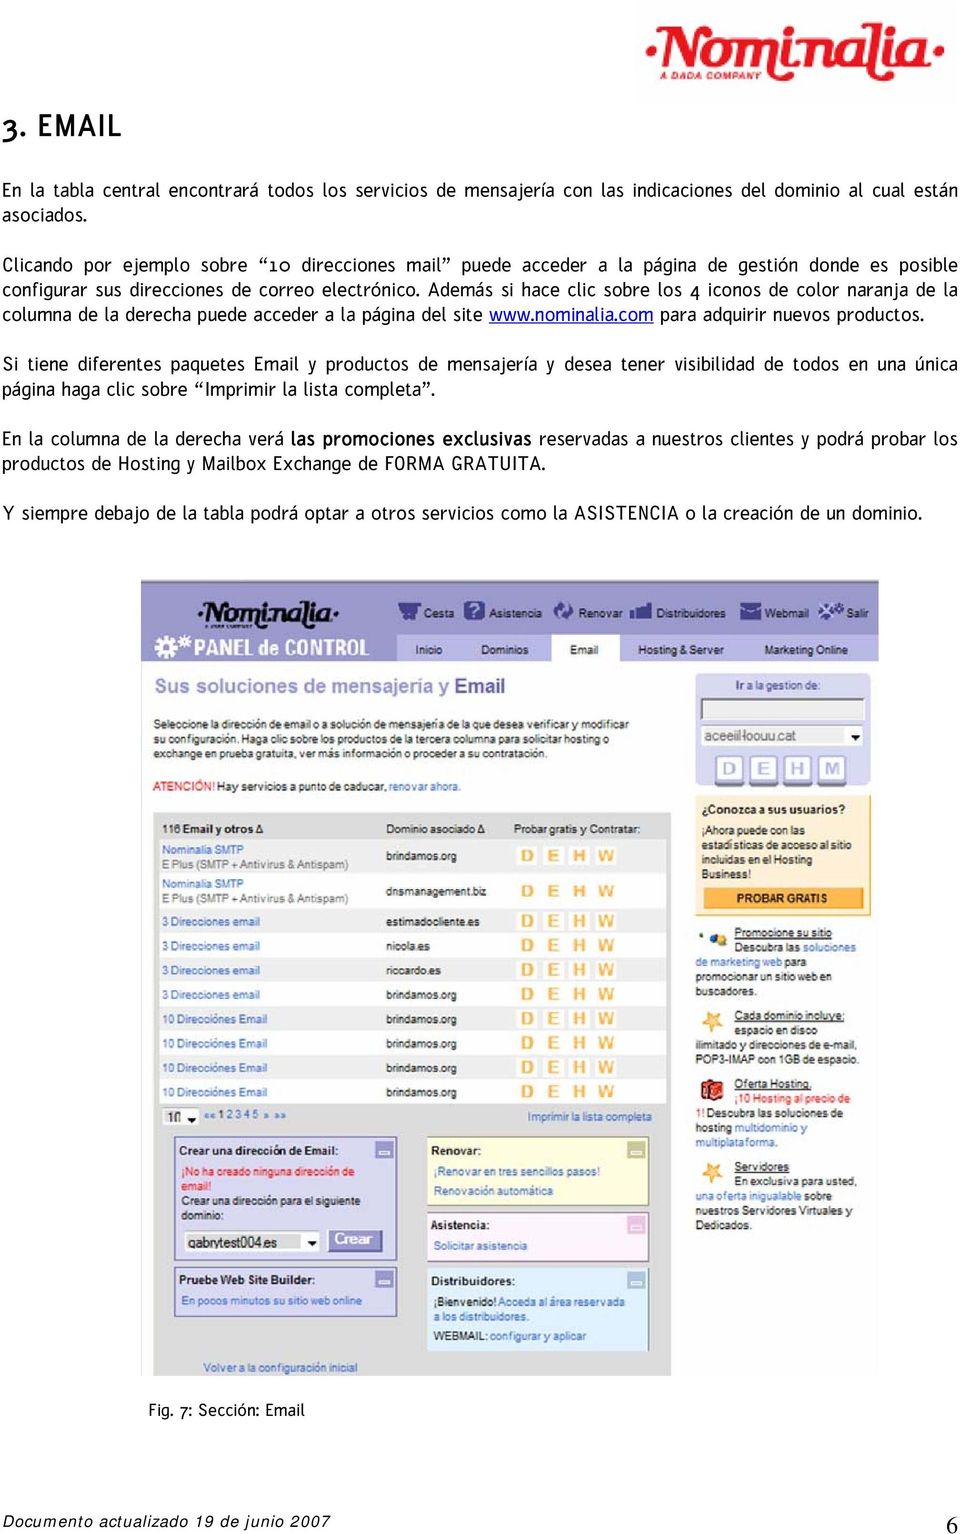 Además si hace clic sobre los 4 iconos de color naranja de la columna de la derecha puede acceder a la página del site www.nominalia.com para adquirir nuevos productos.